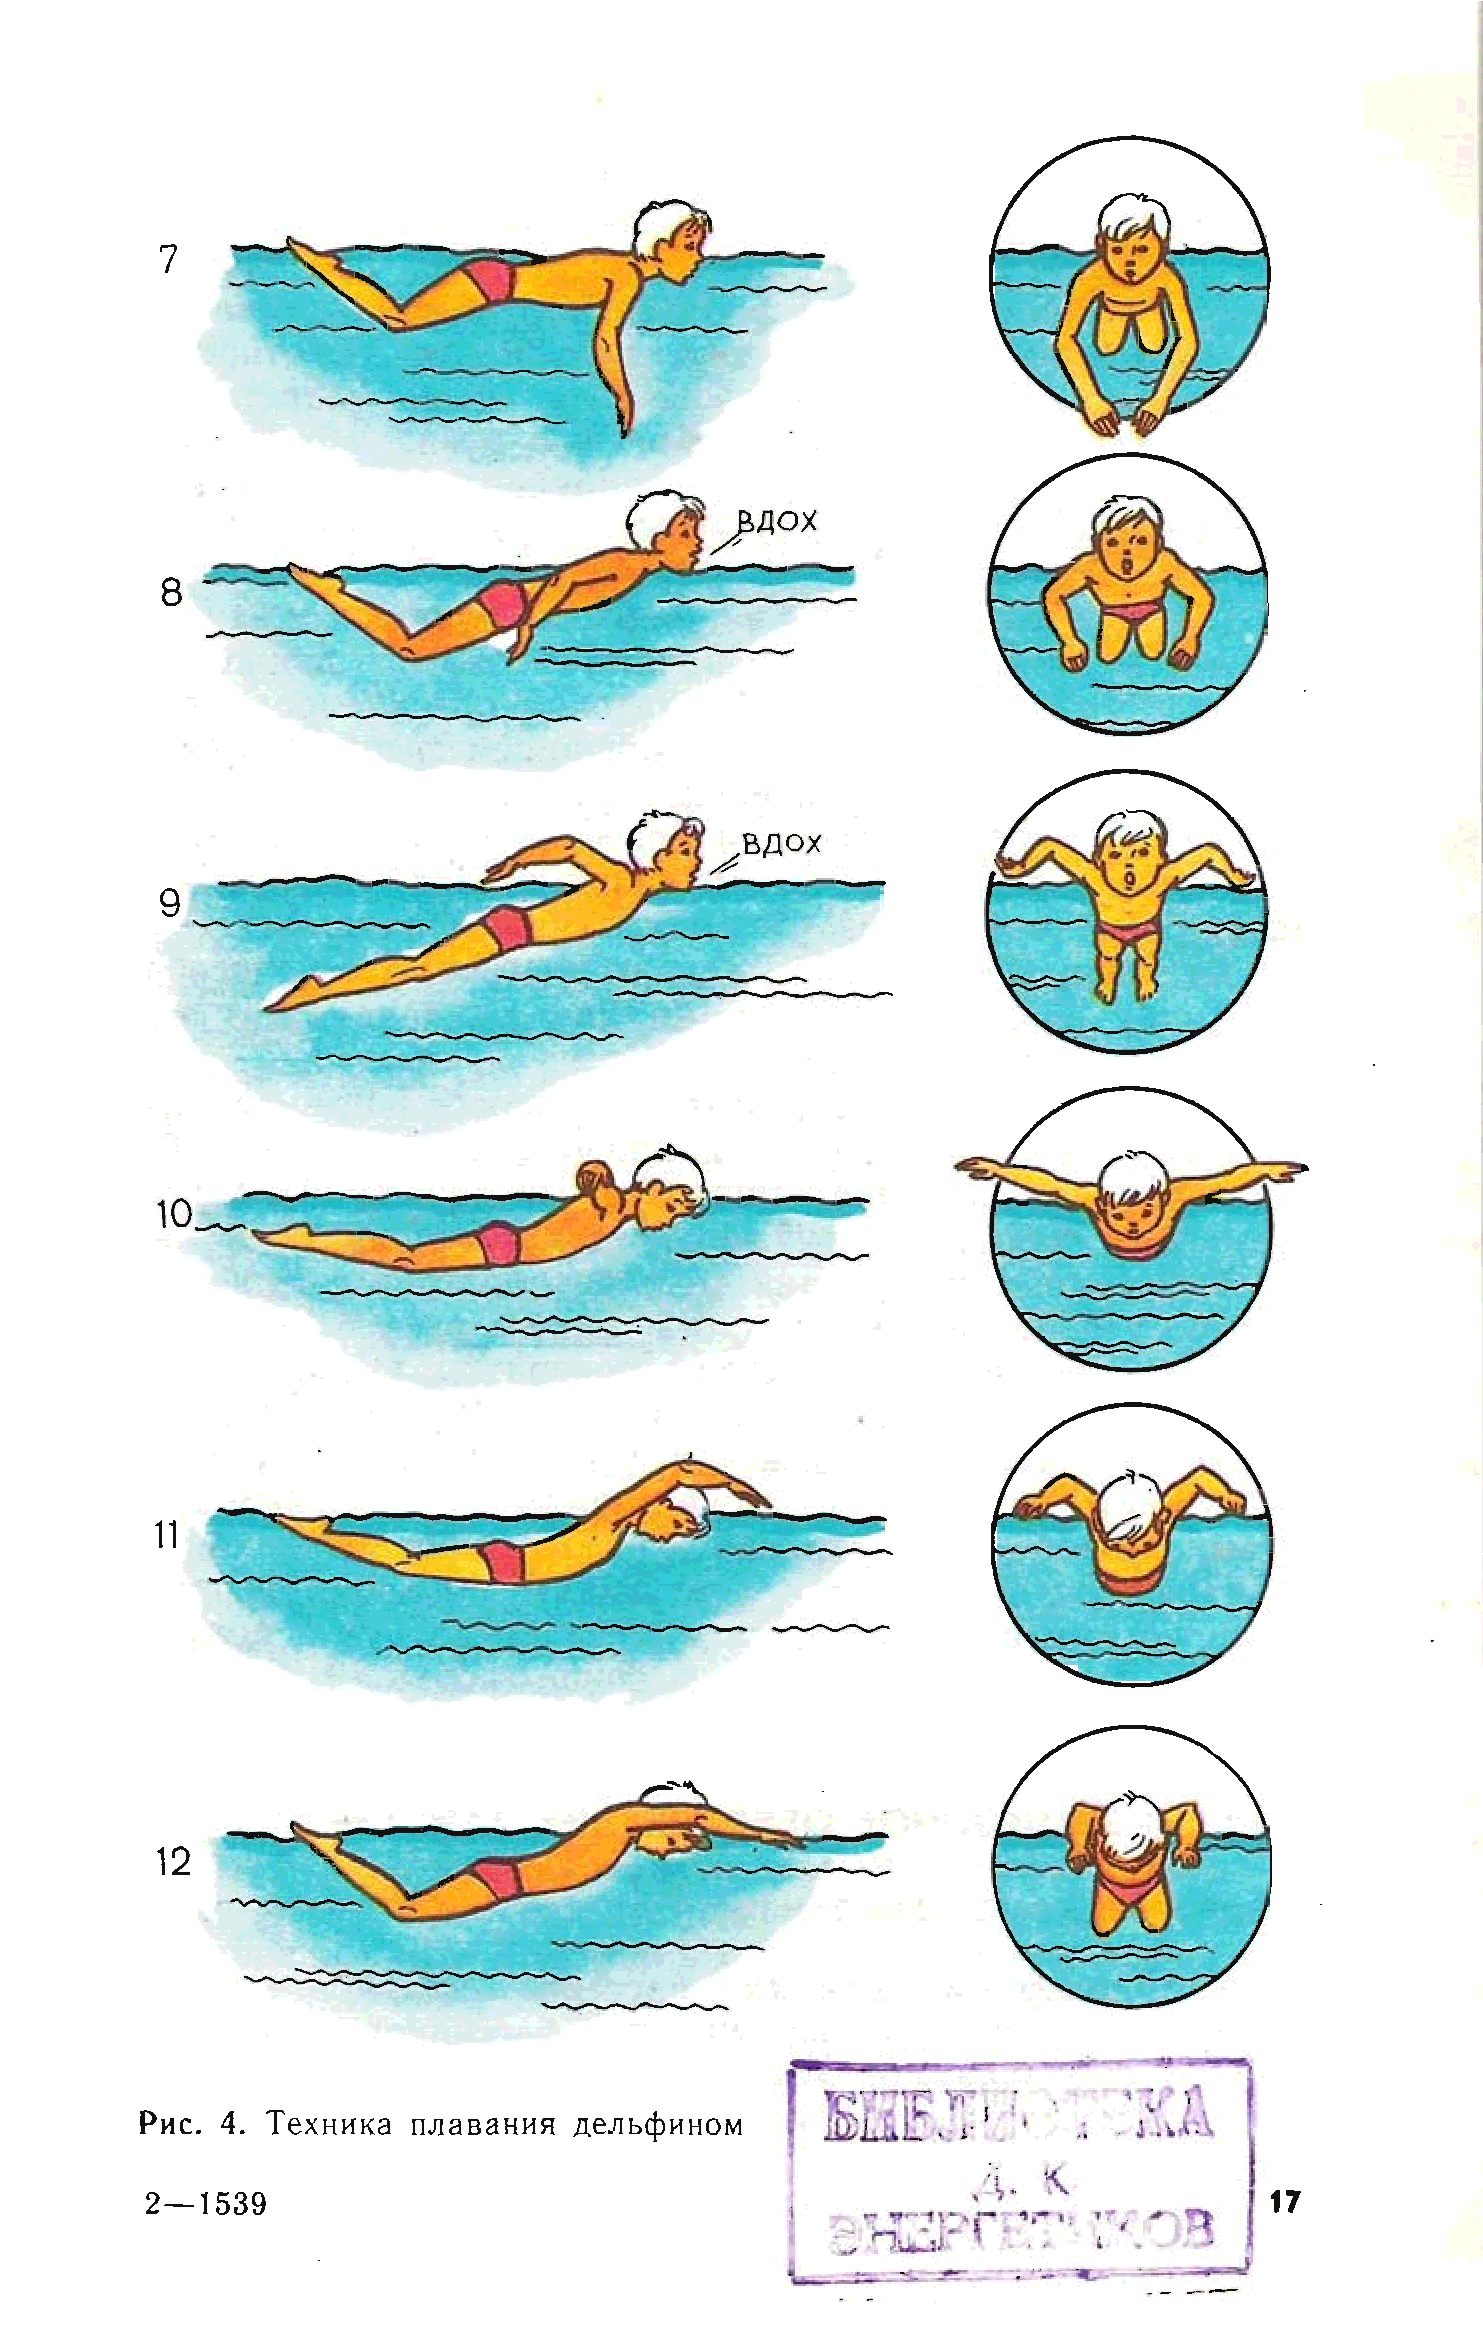 техника плавания картинки